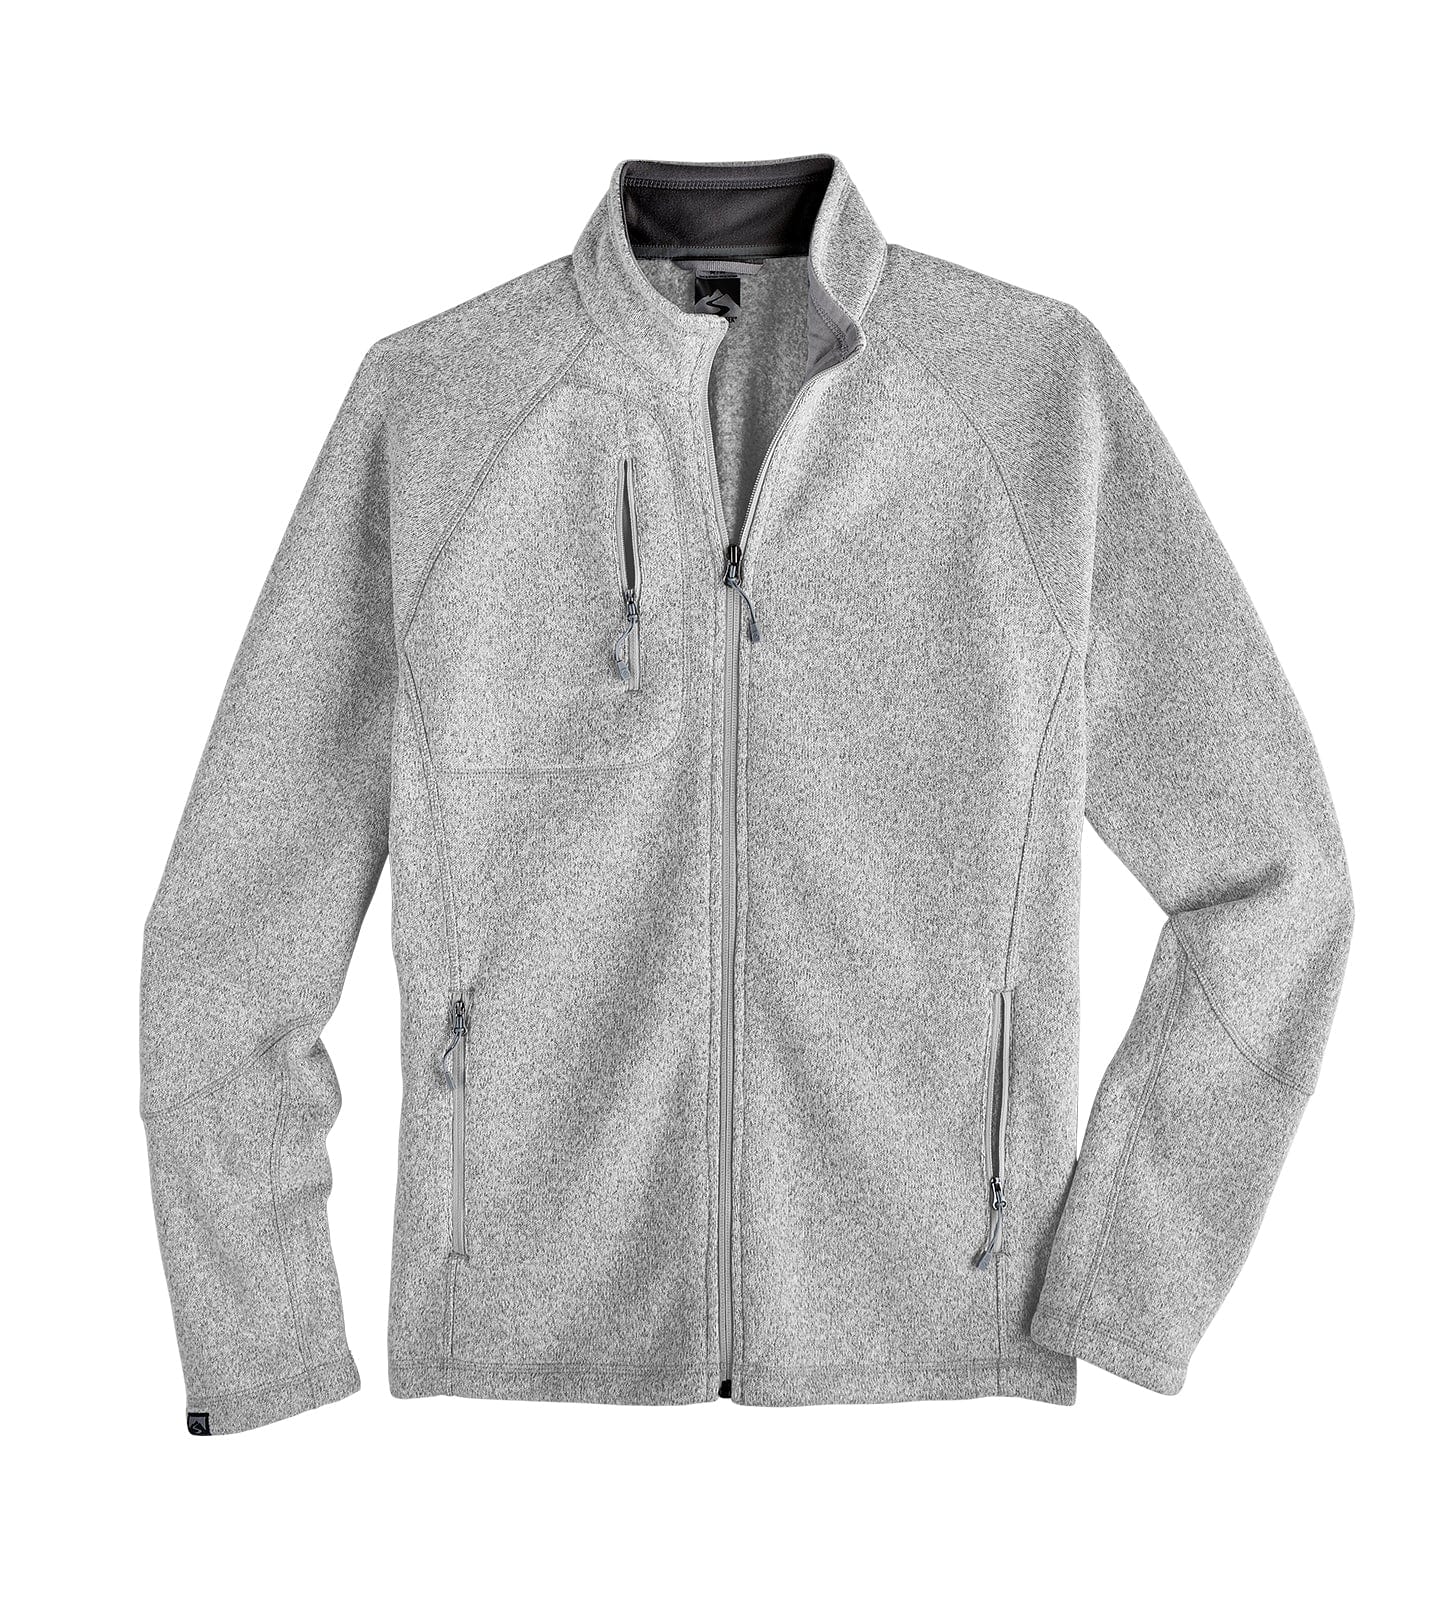 Customizable Storm Creek® Men's Overachiever Sweaterfleece Jacket in platinum.